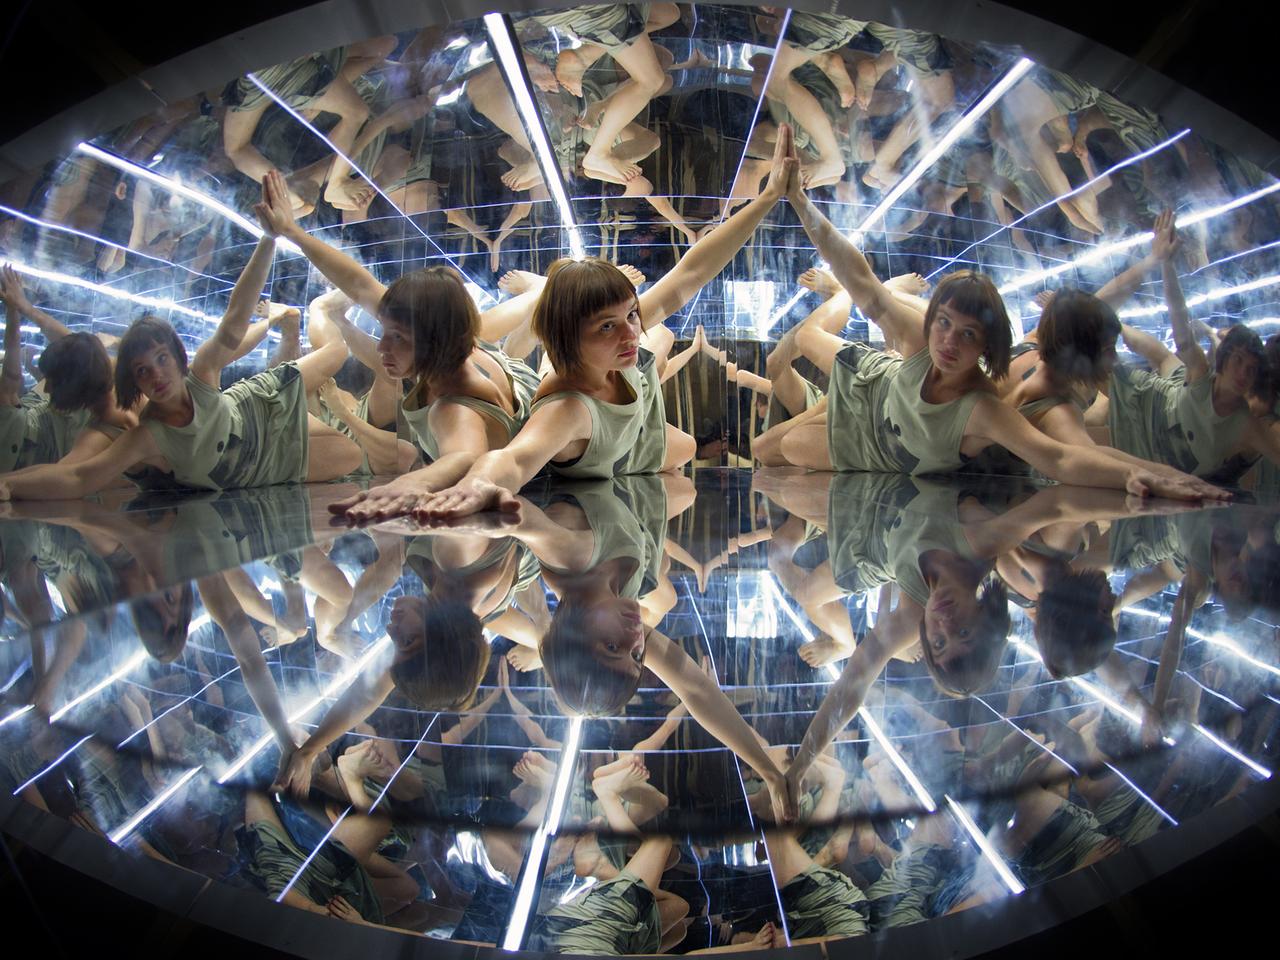 Die Dresdner Künstlerin Johanna Roggan bewegt sich am 11.11.2013 in einer komplett verspiegelten 2,60 x 1,00 x 0,60 Meter Kiste in der Performance-Installation "EmotiCam" im Rahmen der Pressekonferenz des 17. CYNETART-Festival 2013.